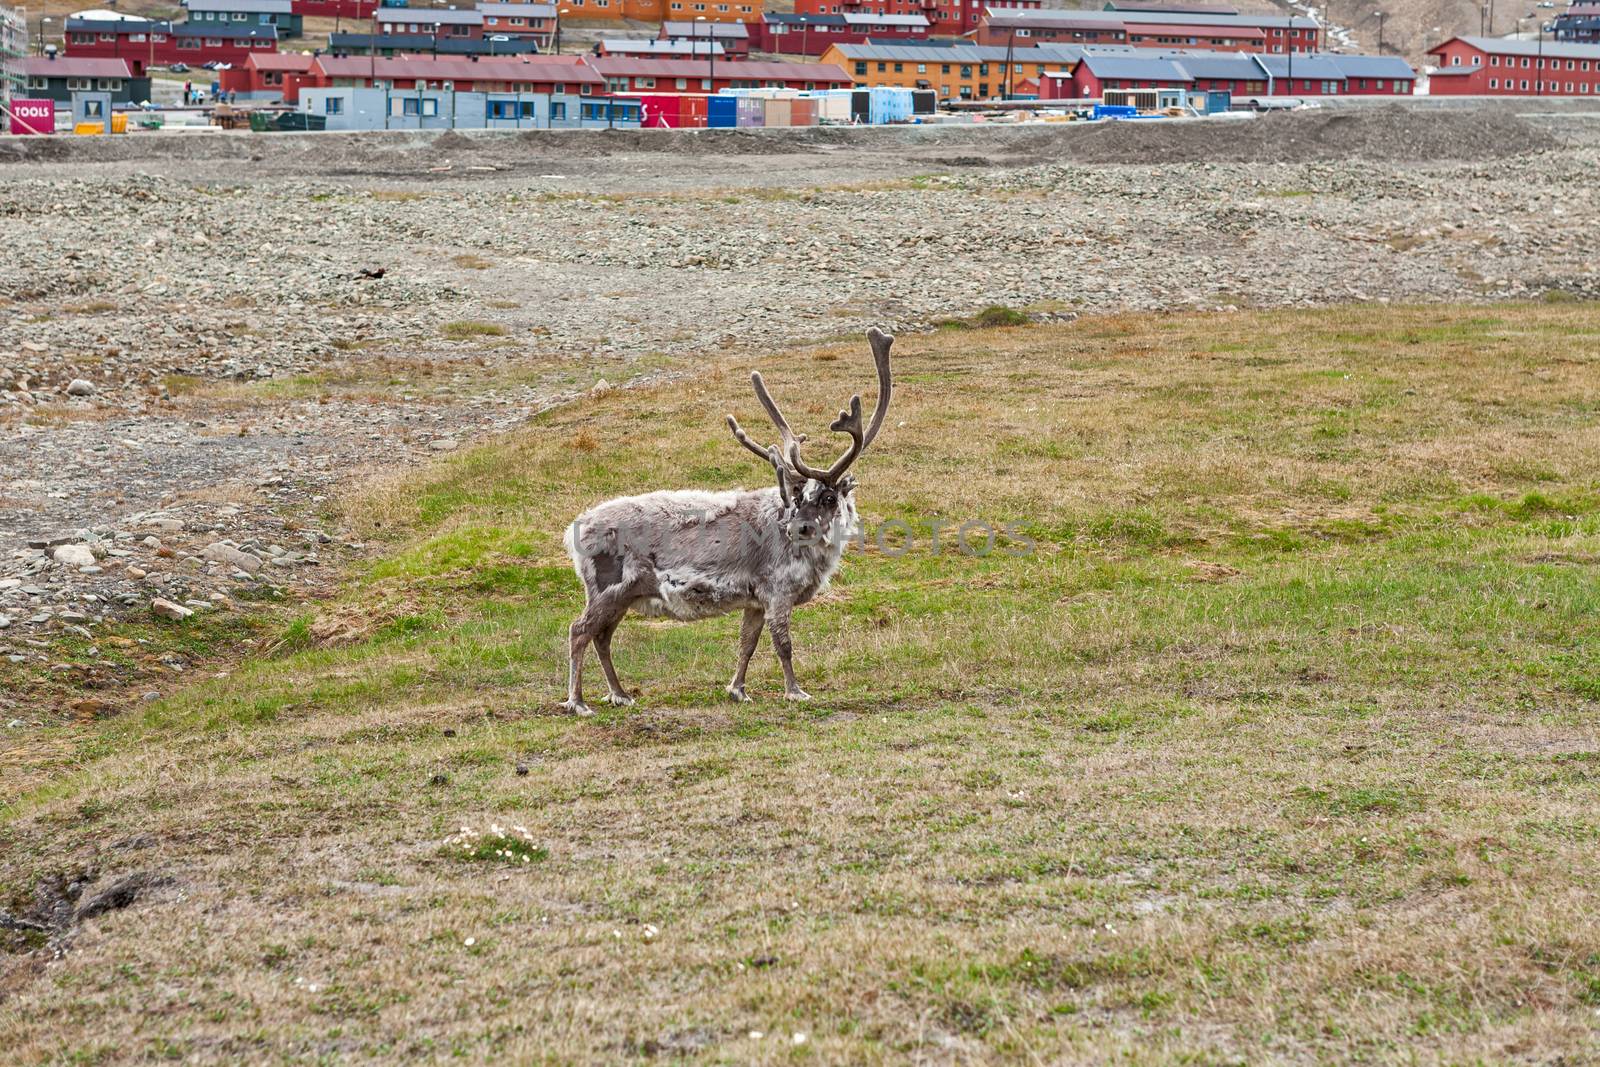 Free reindeer in Longyearbyen, Norway by LuigiMorbidelli